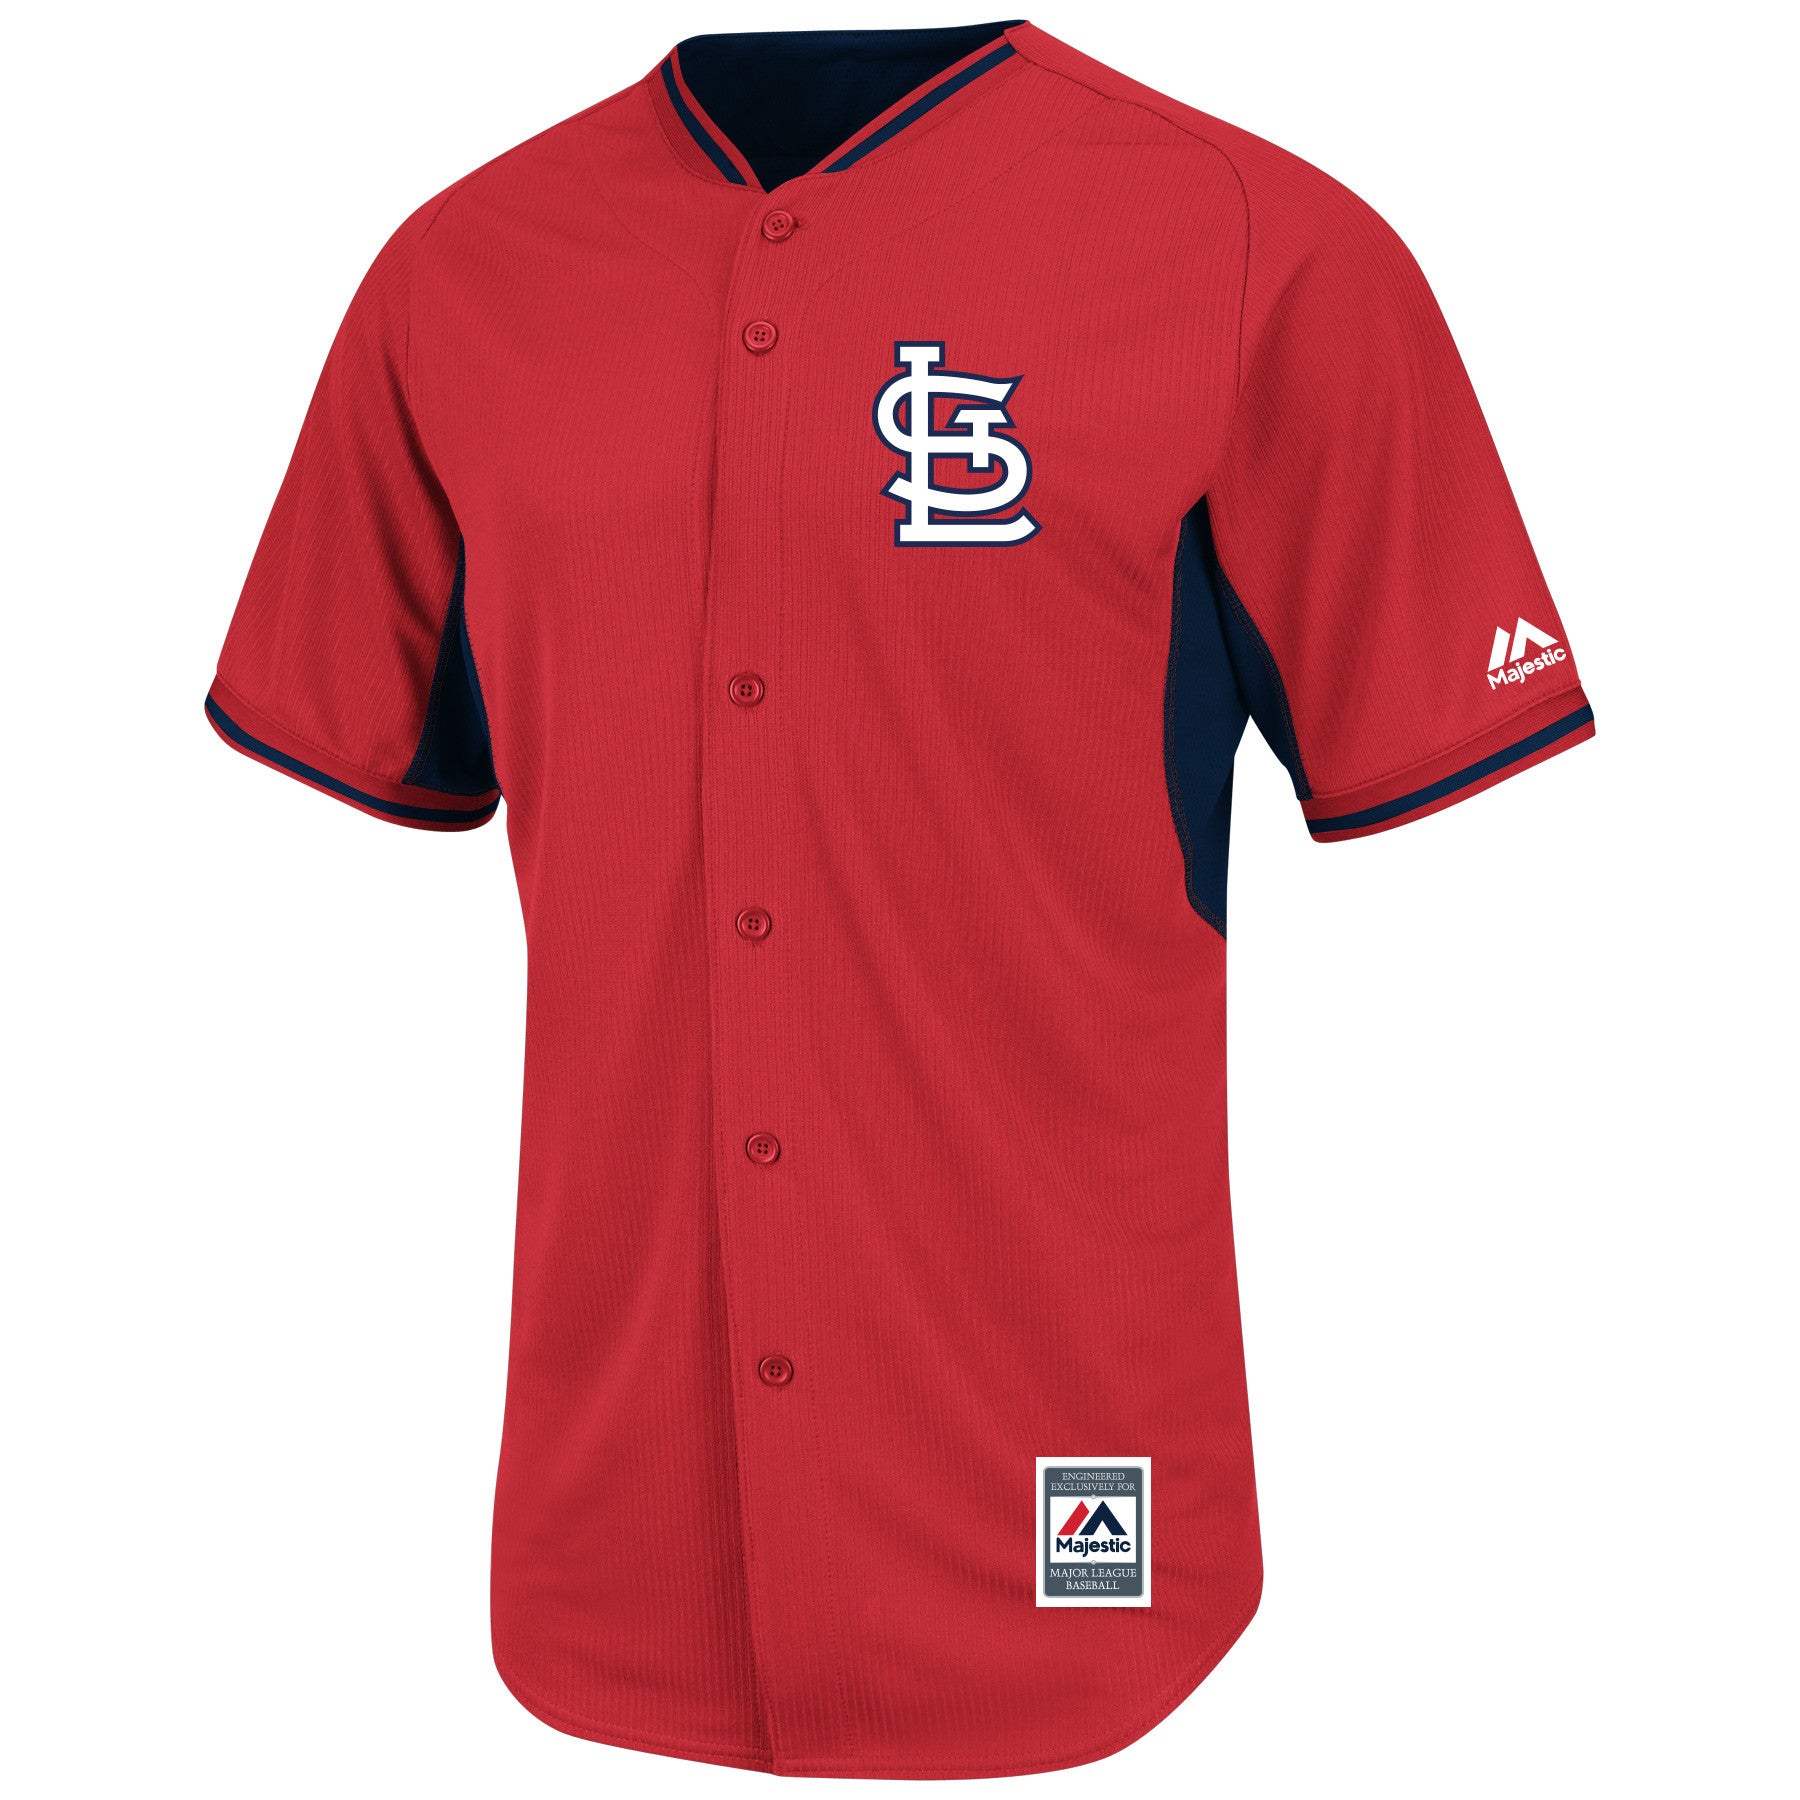 cardinals batting jersey